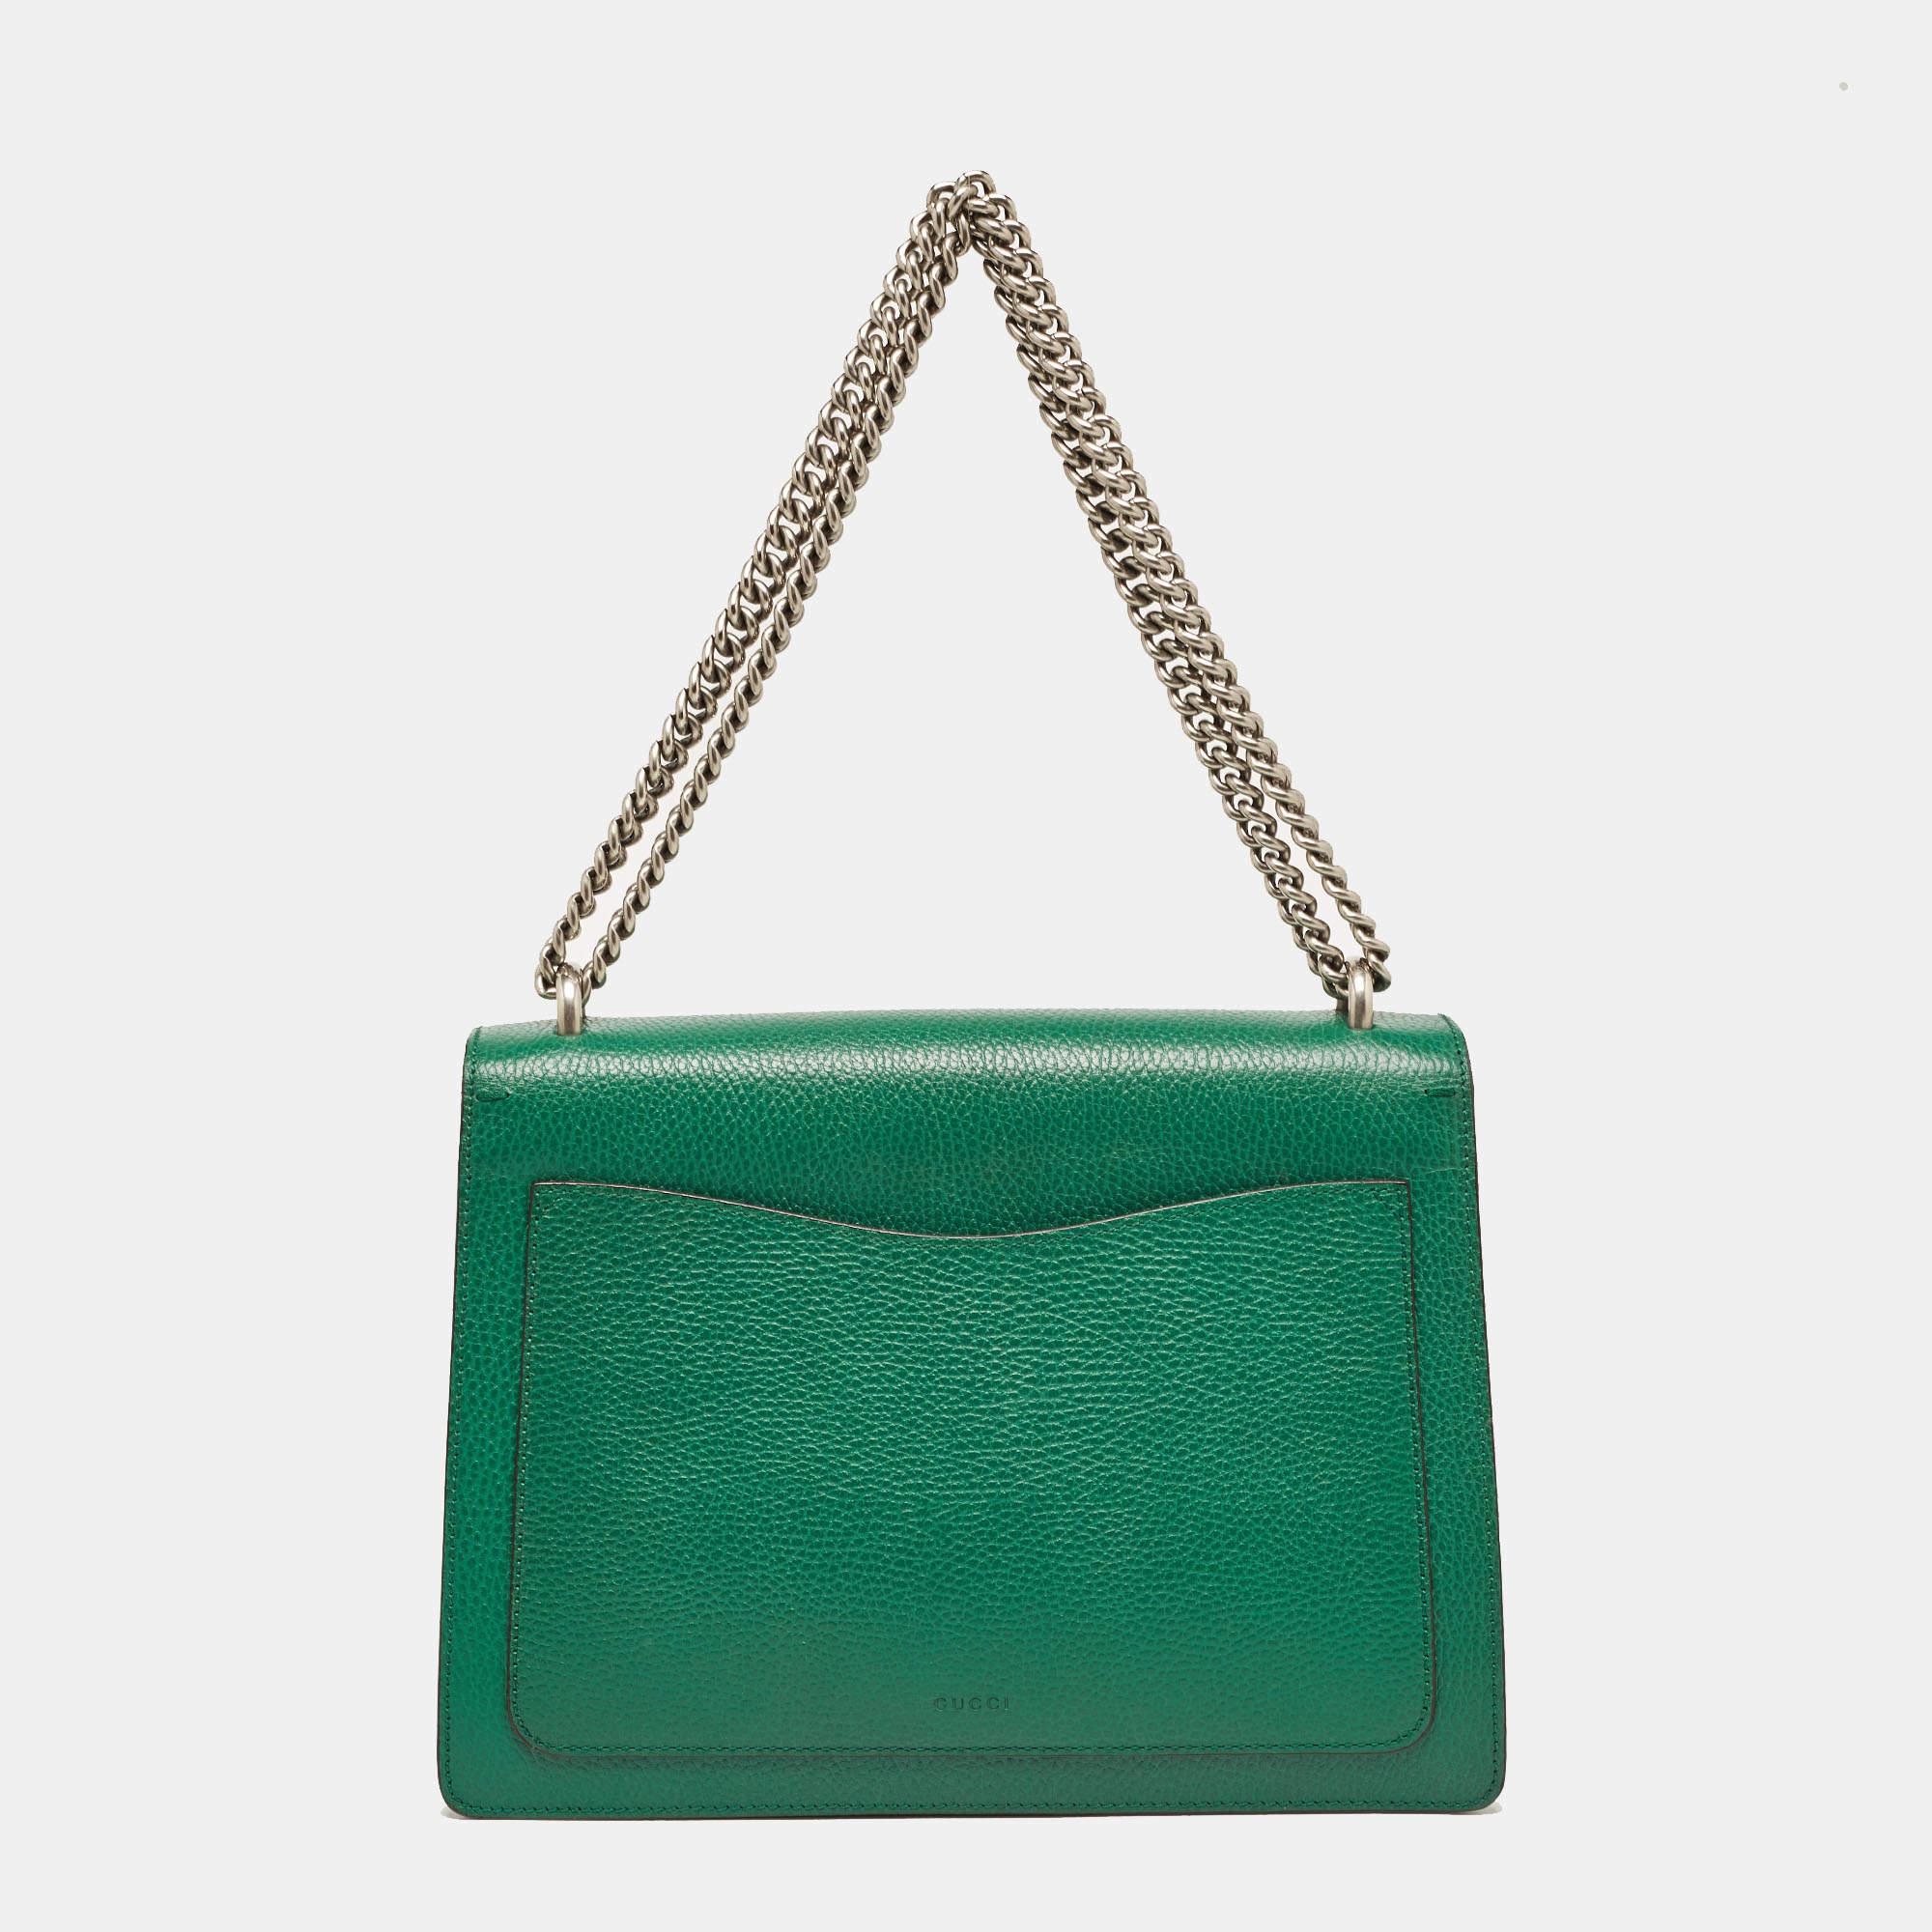 Gucci Green Leather Medium Dionysus Shoulder Bag For Sale 6